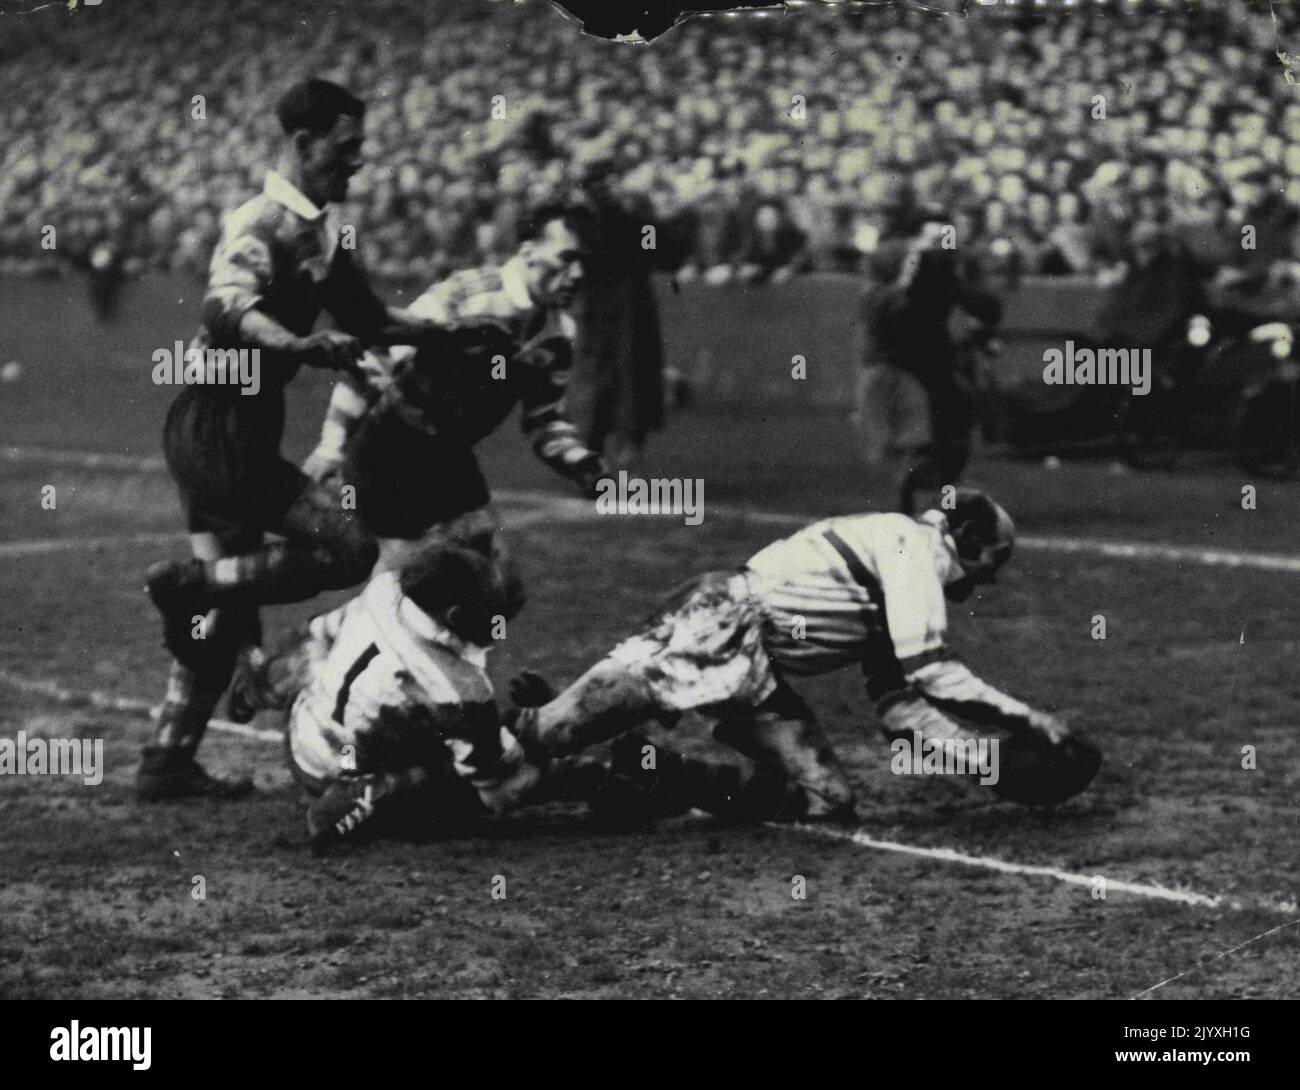 Final del Campeonato de la Liga de Rugby. Brian Bevan (Warrington) marca el intento que ayudó a Warrington a ganar la Copa del Campeonato de la Liga. La segunda temporada consecutiva para el otro australiano Harry Bath marcó dos goles de penalti. 14 de mayo de 1955. Foto de stock